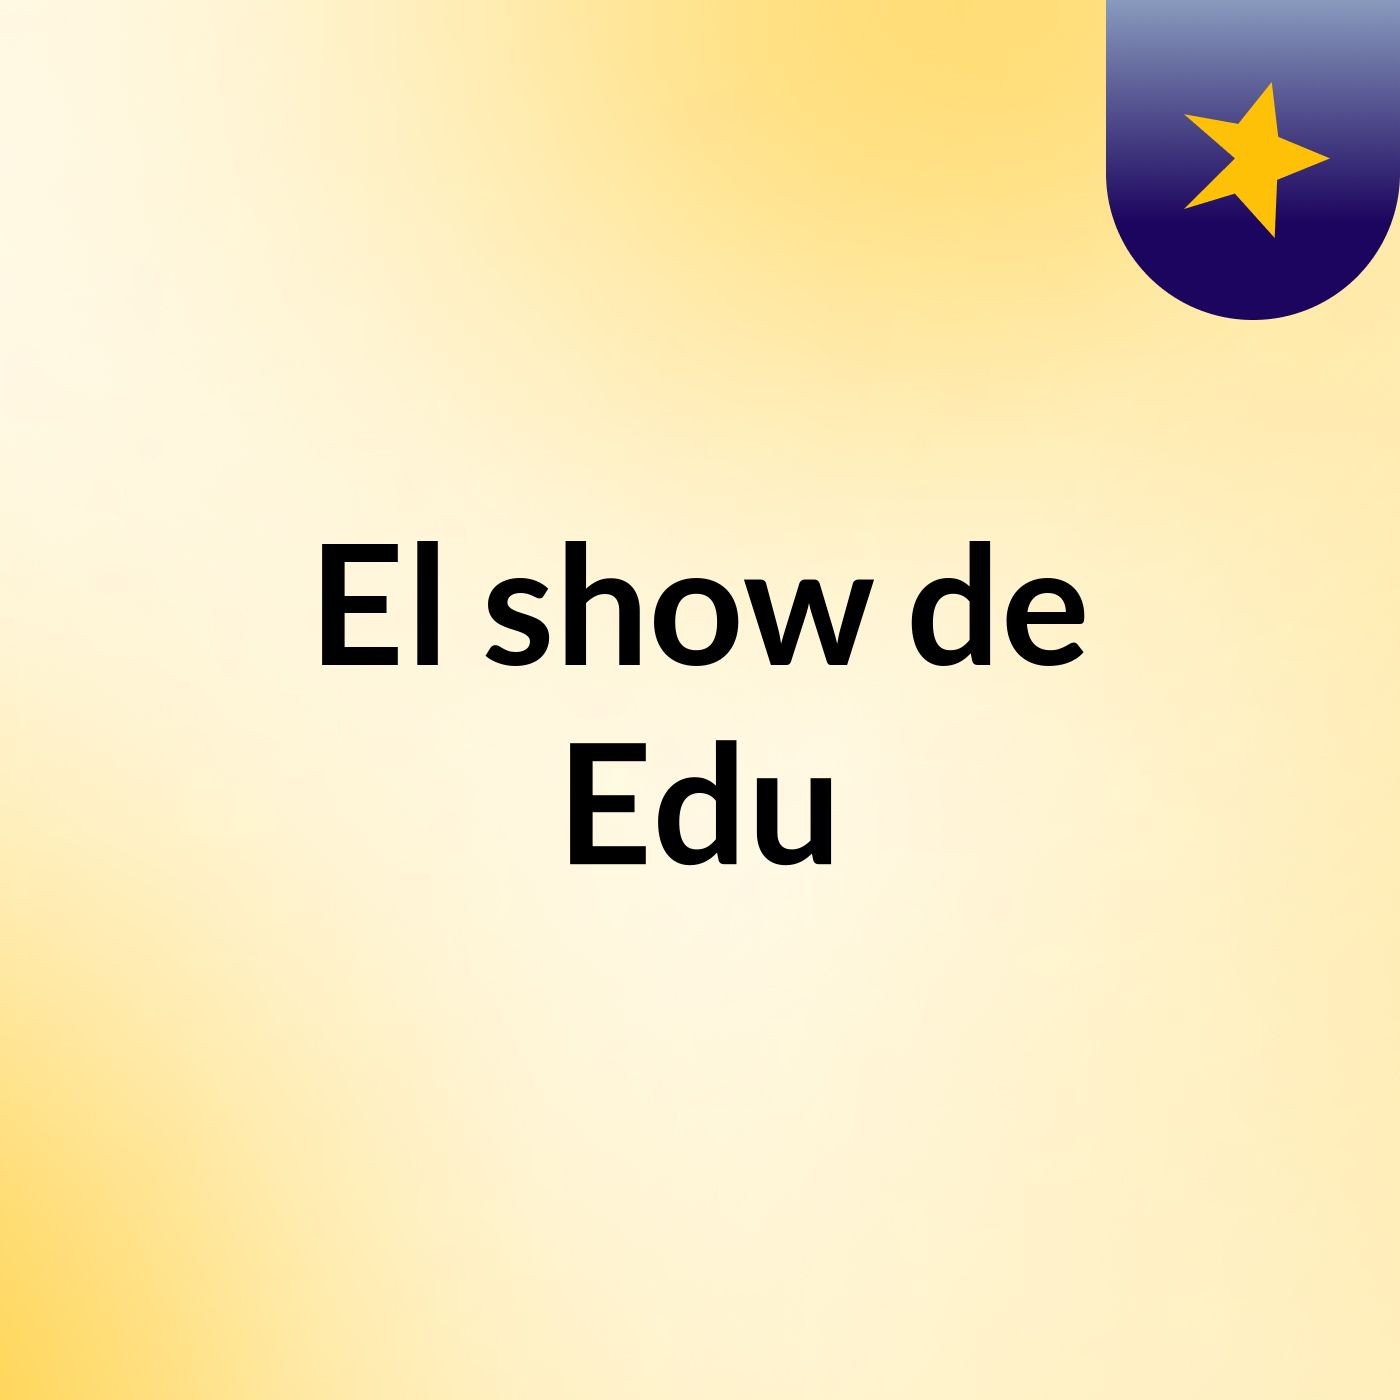 El show de Edu